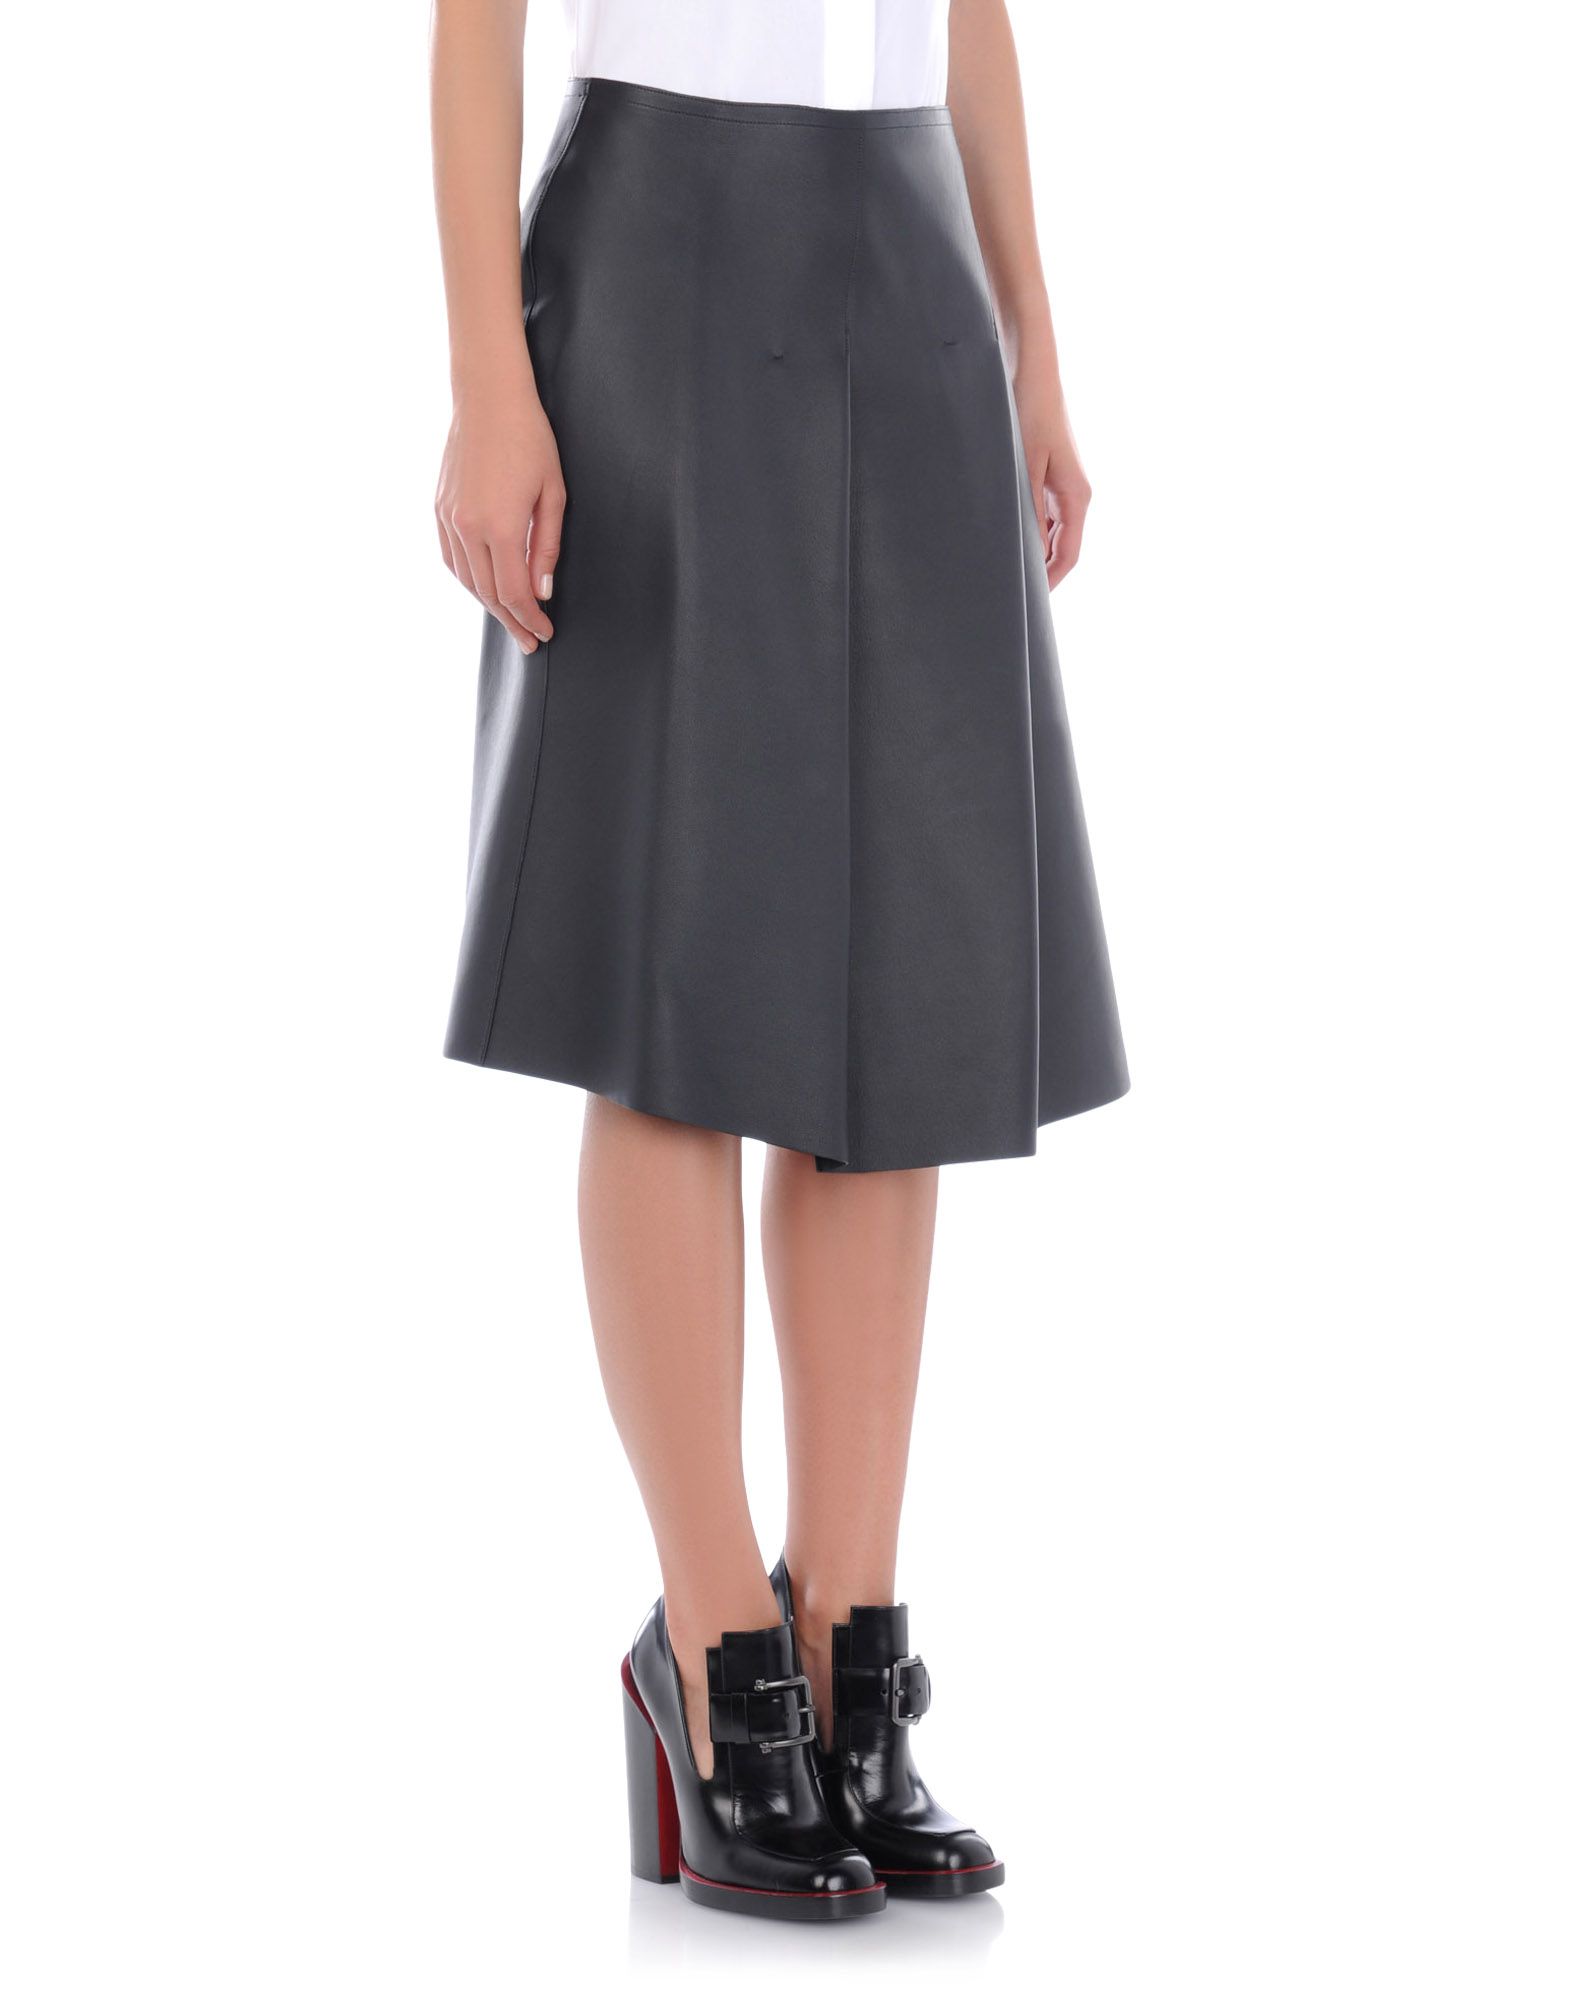 Skirt Women - Skirts Women on Jil Sander Online Store